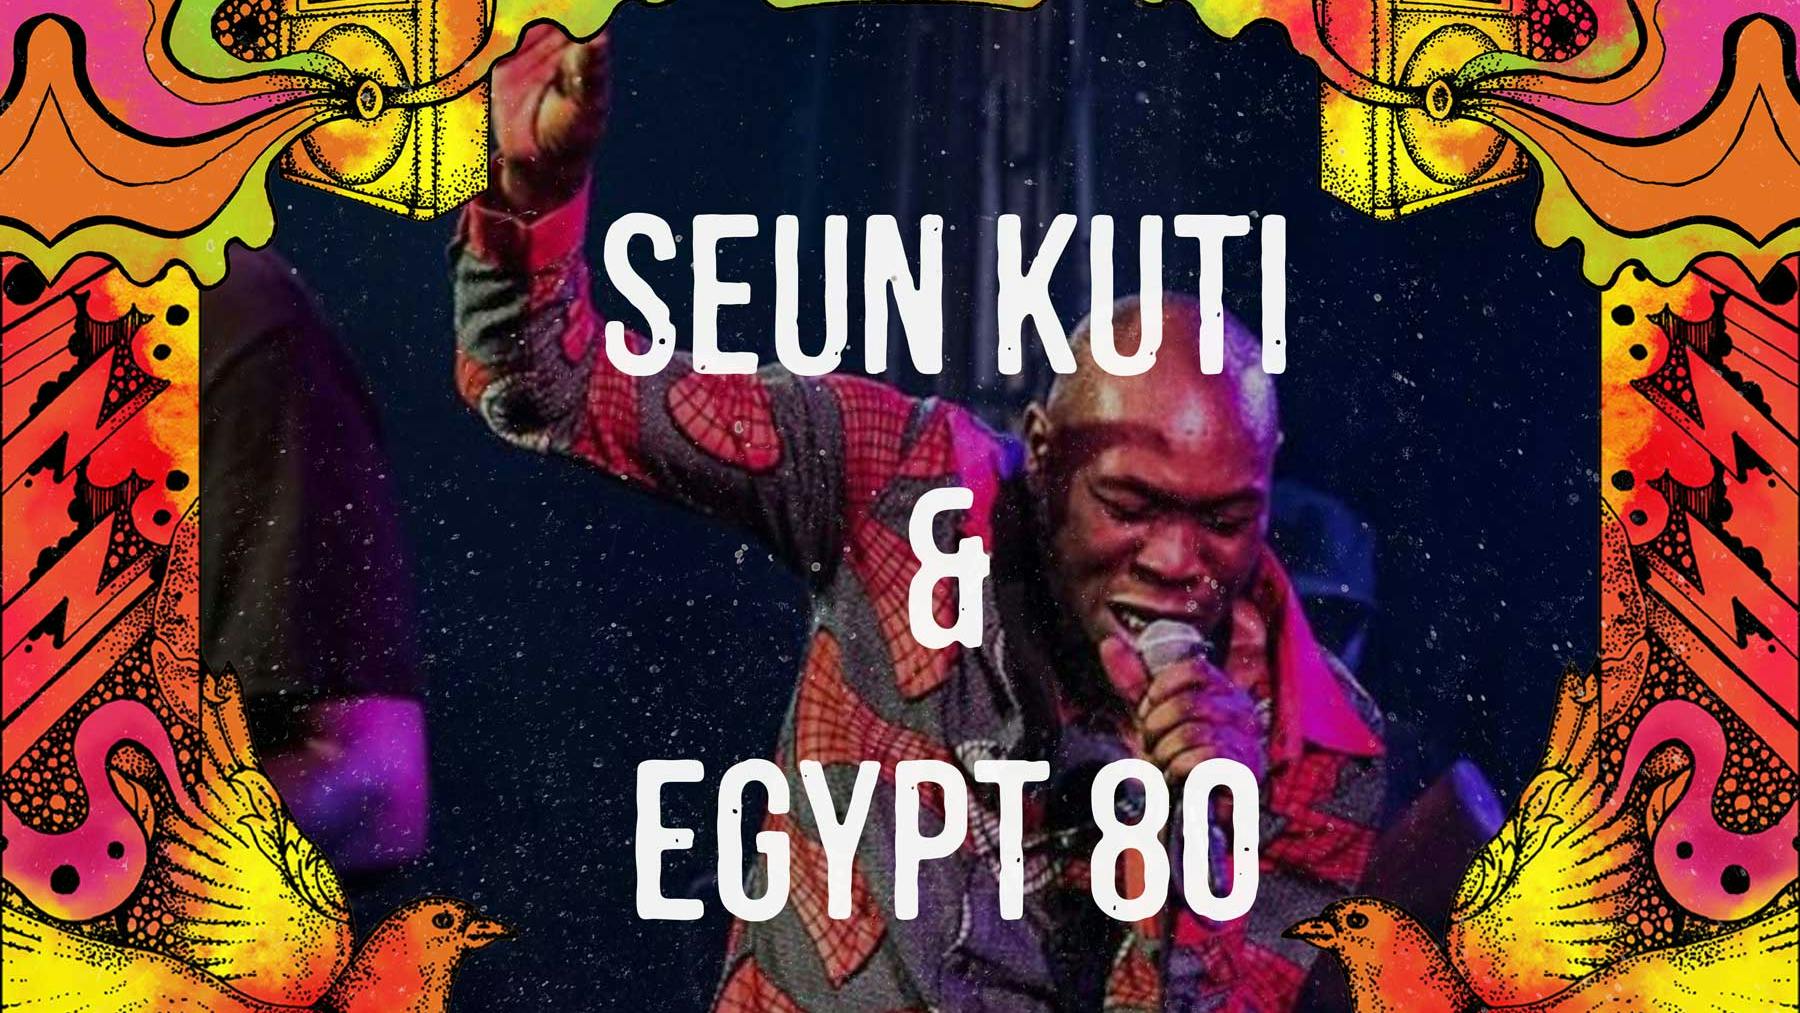 Introducing: Seun Kuti & Egypt 80